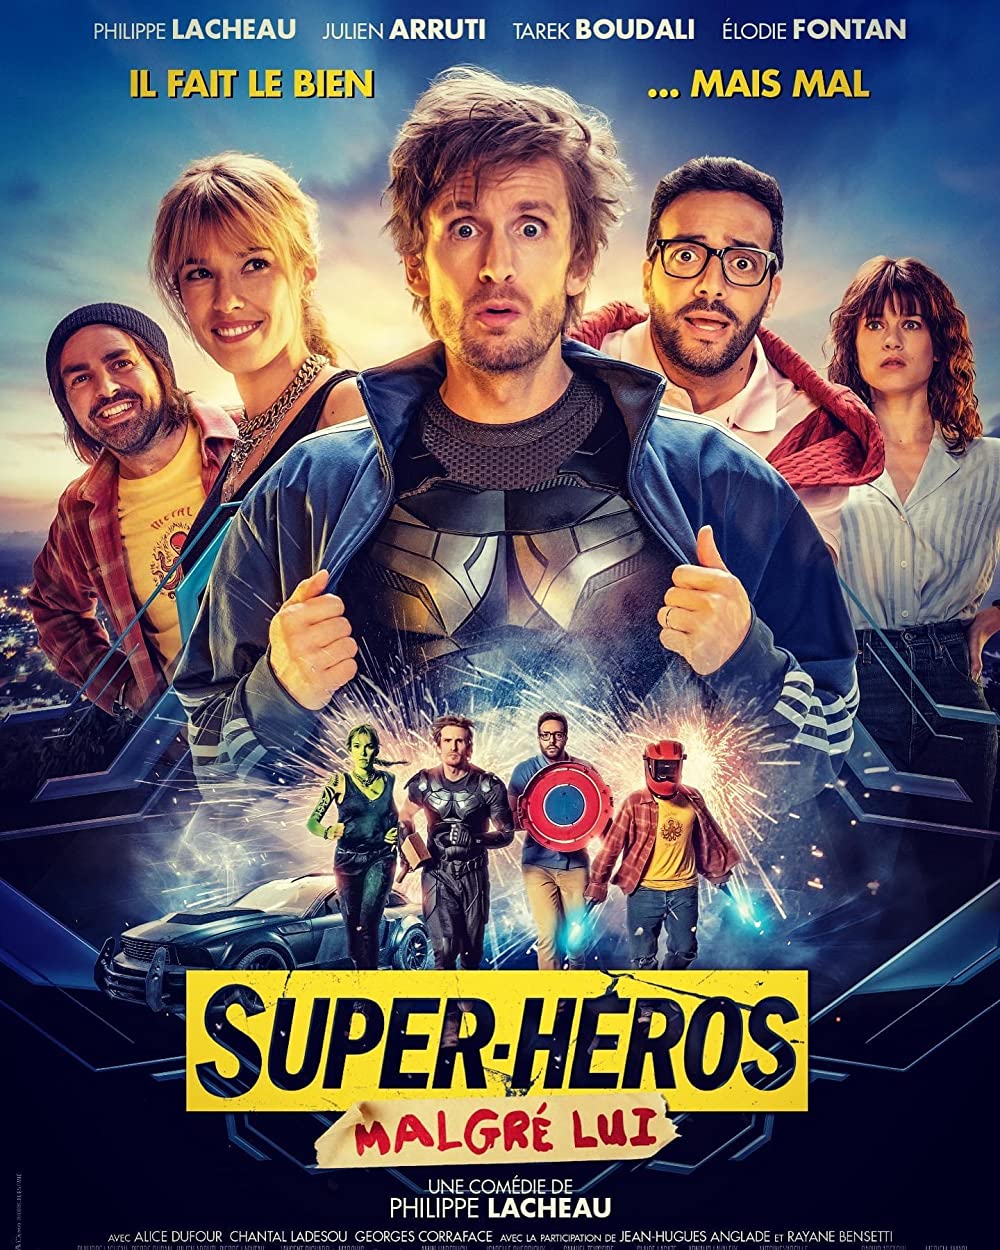 Filmbeschreibung zu Super-héros malgré lui (OV)